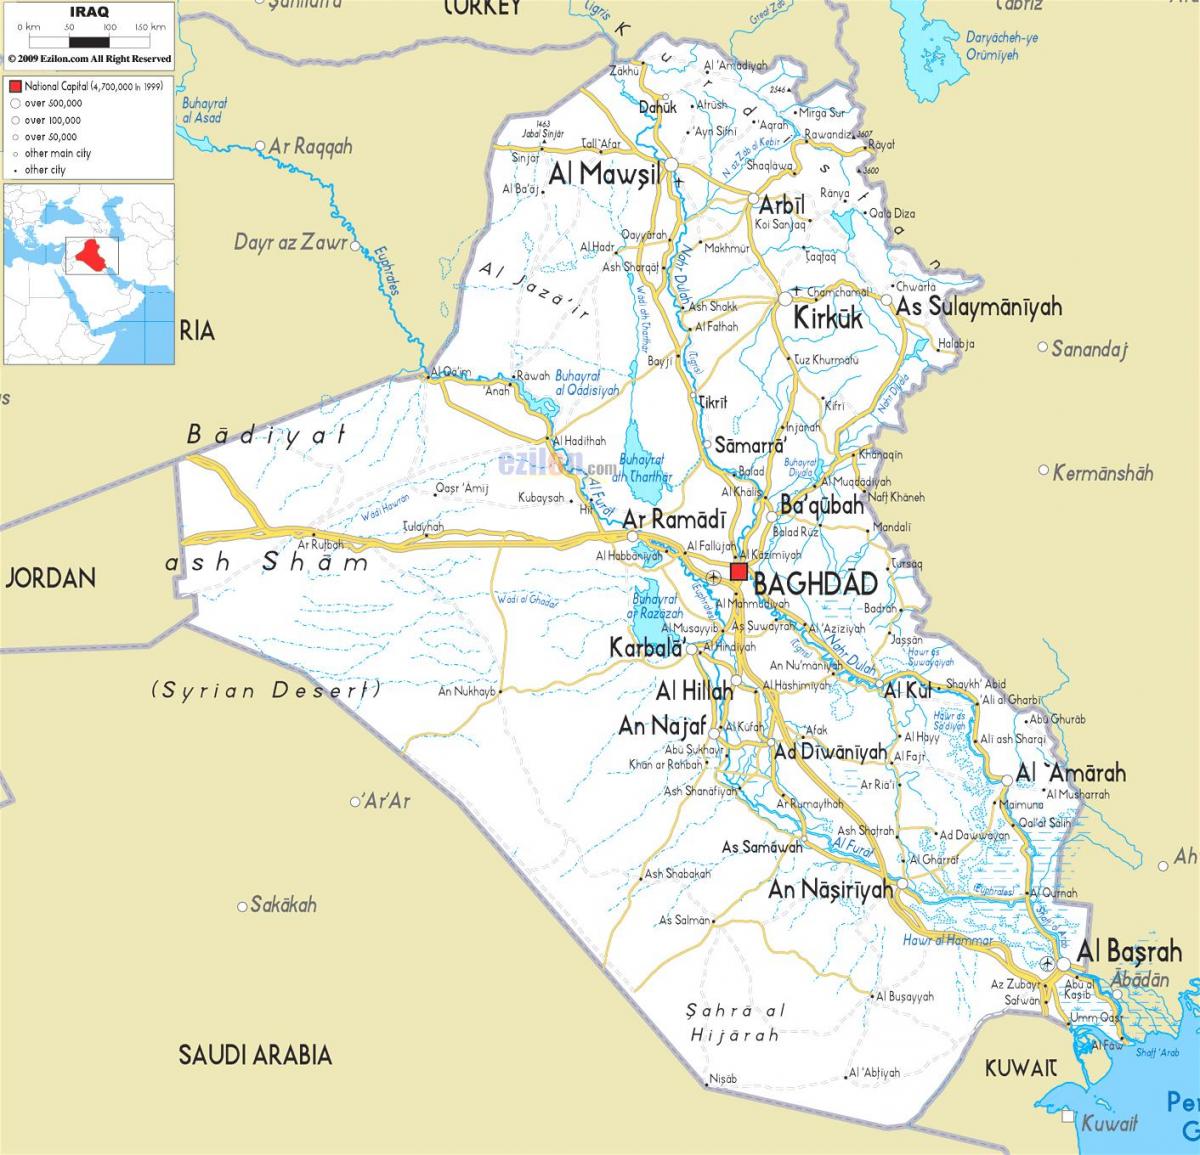 แผนที่ของอิรักแม่น้ำ